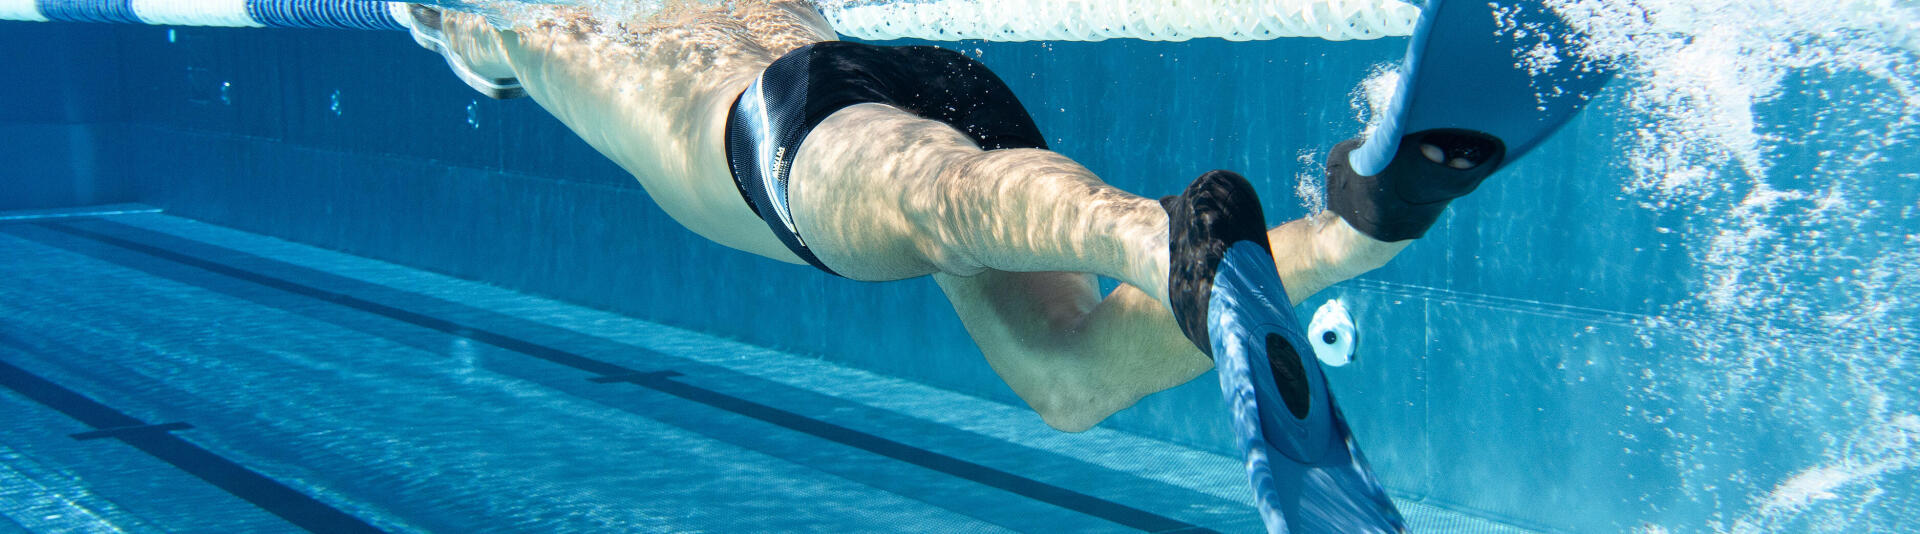 Le matériel de natation pour les jambes